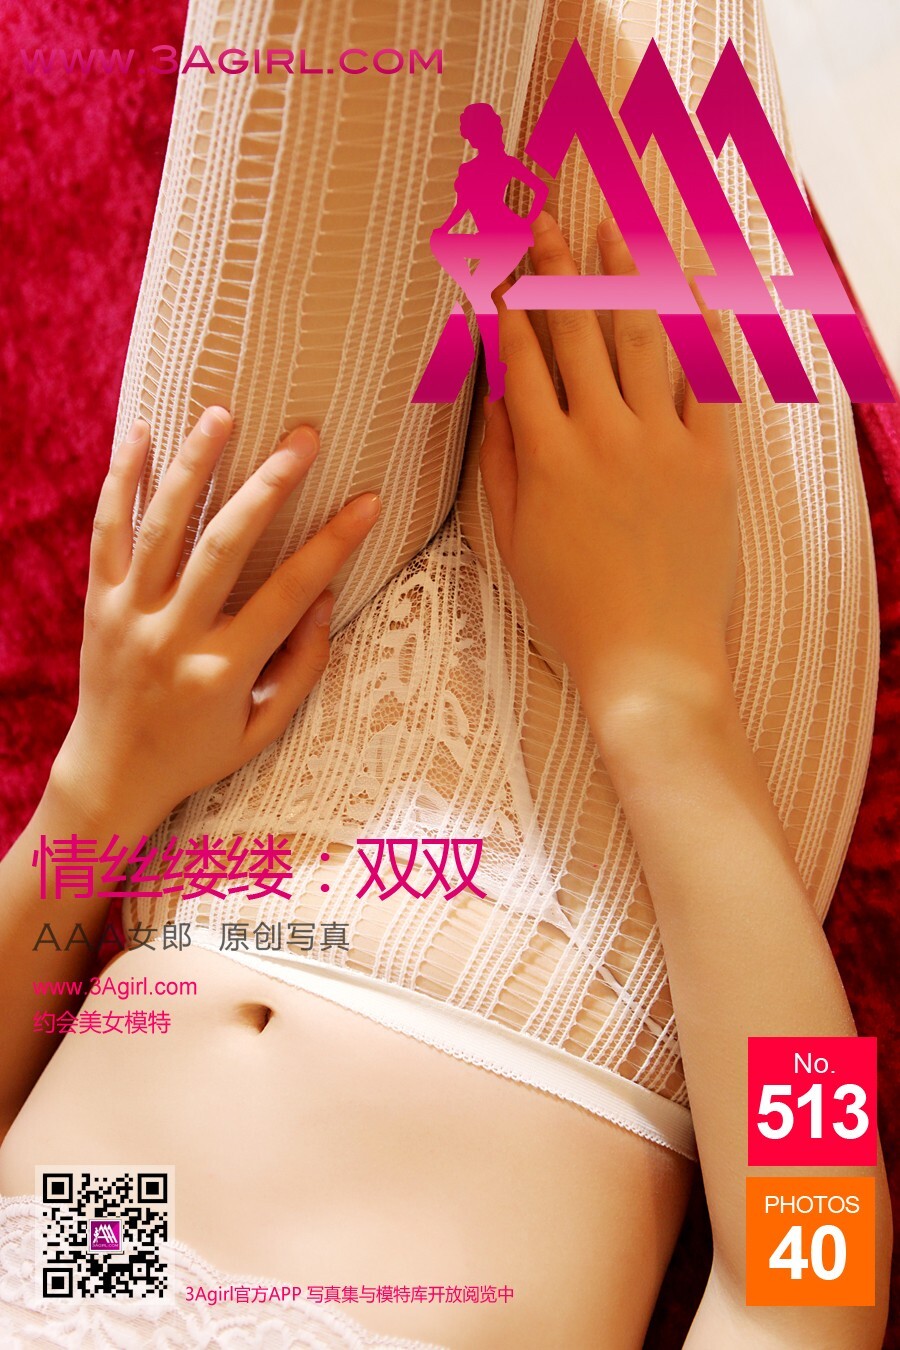 [3agirl] 2015.11.21 No.513 AAA girl: Shuangshuang